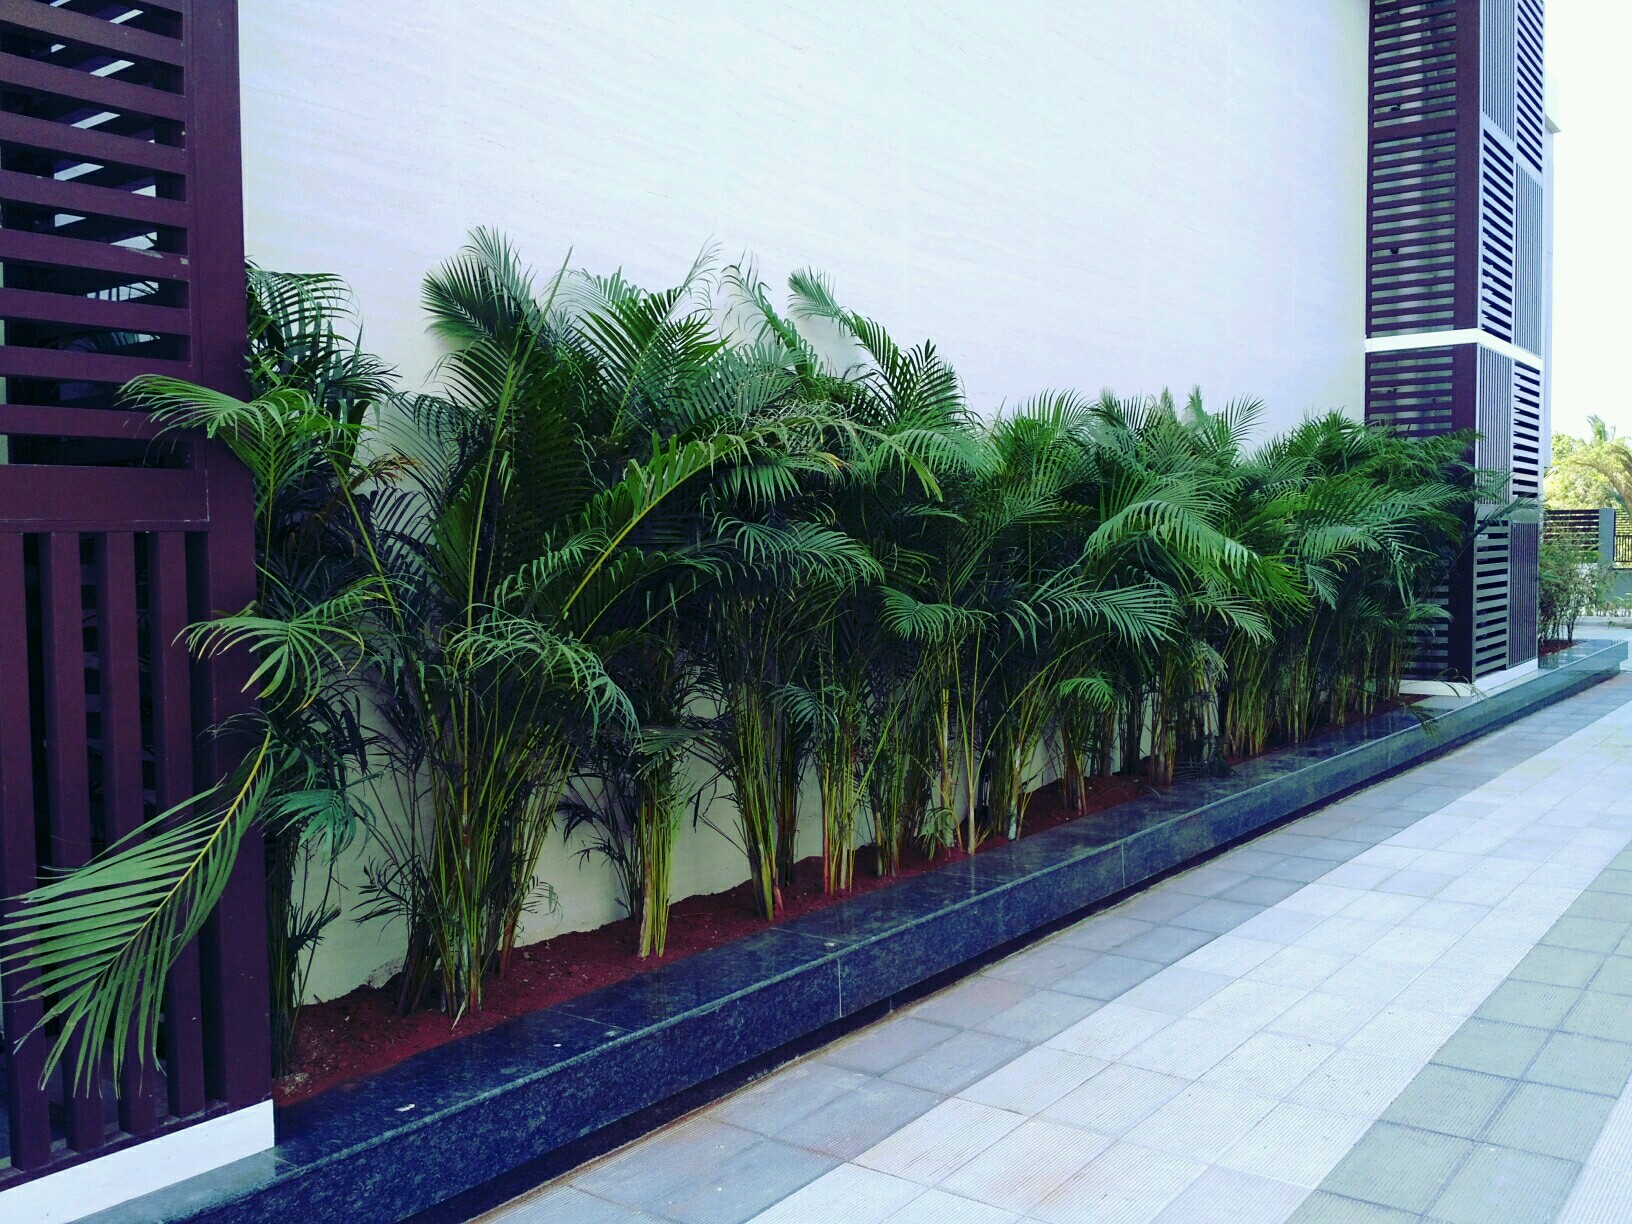 Vertical green wall gardens in Chennai